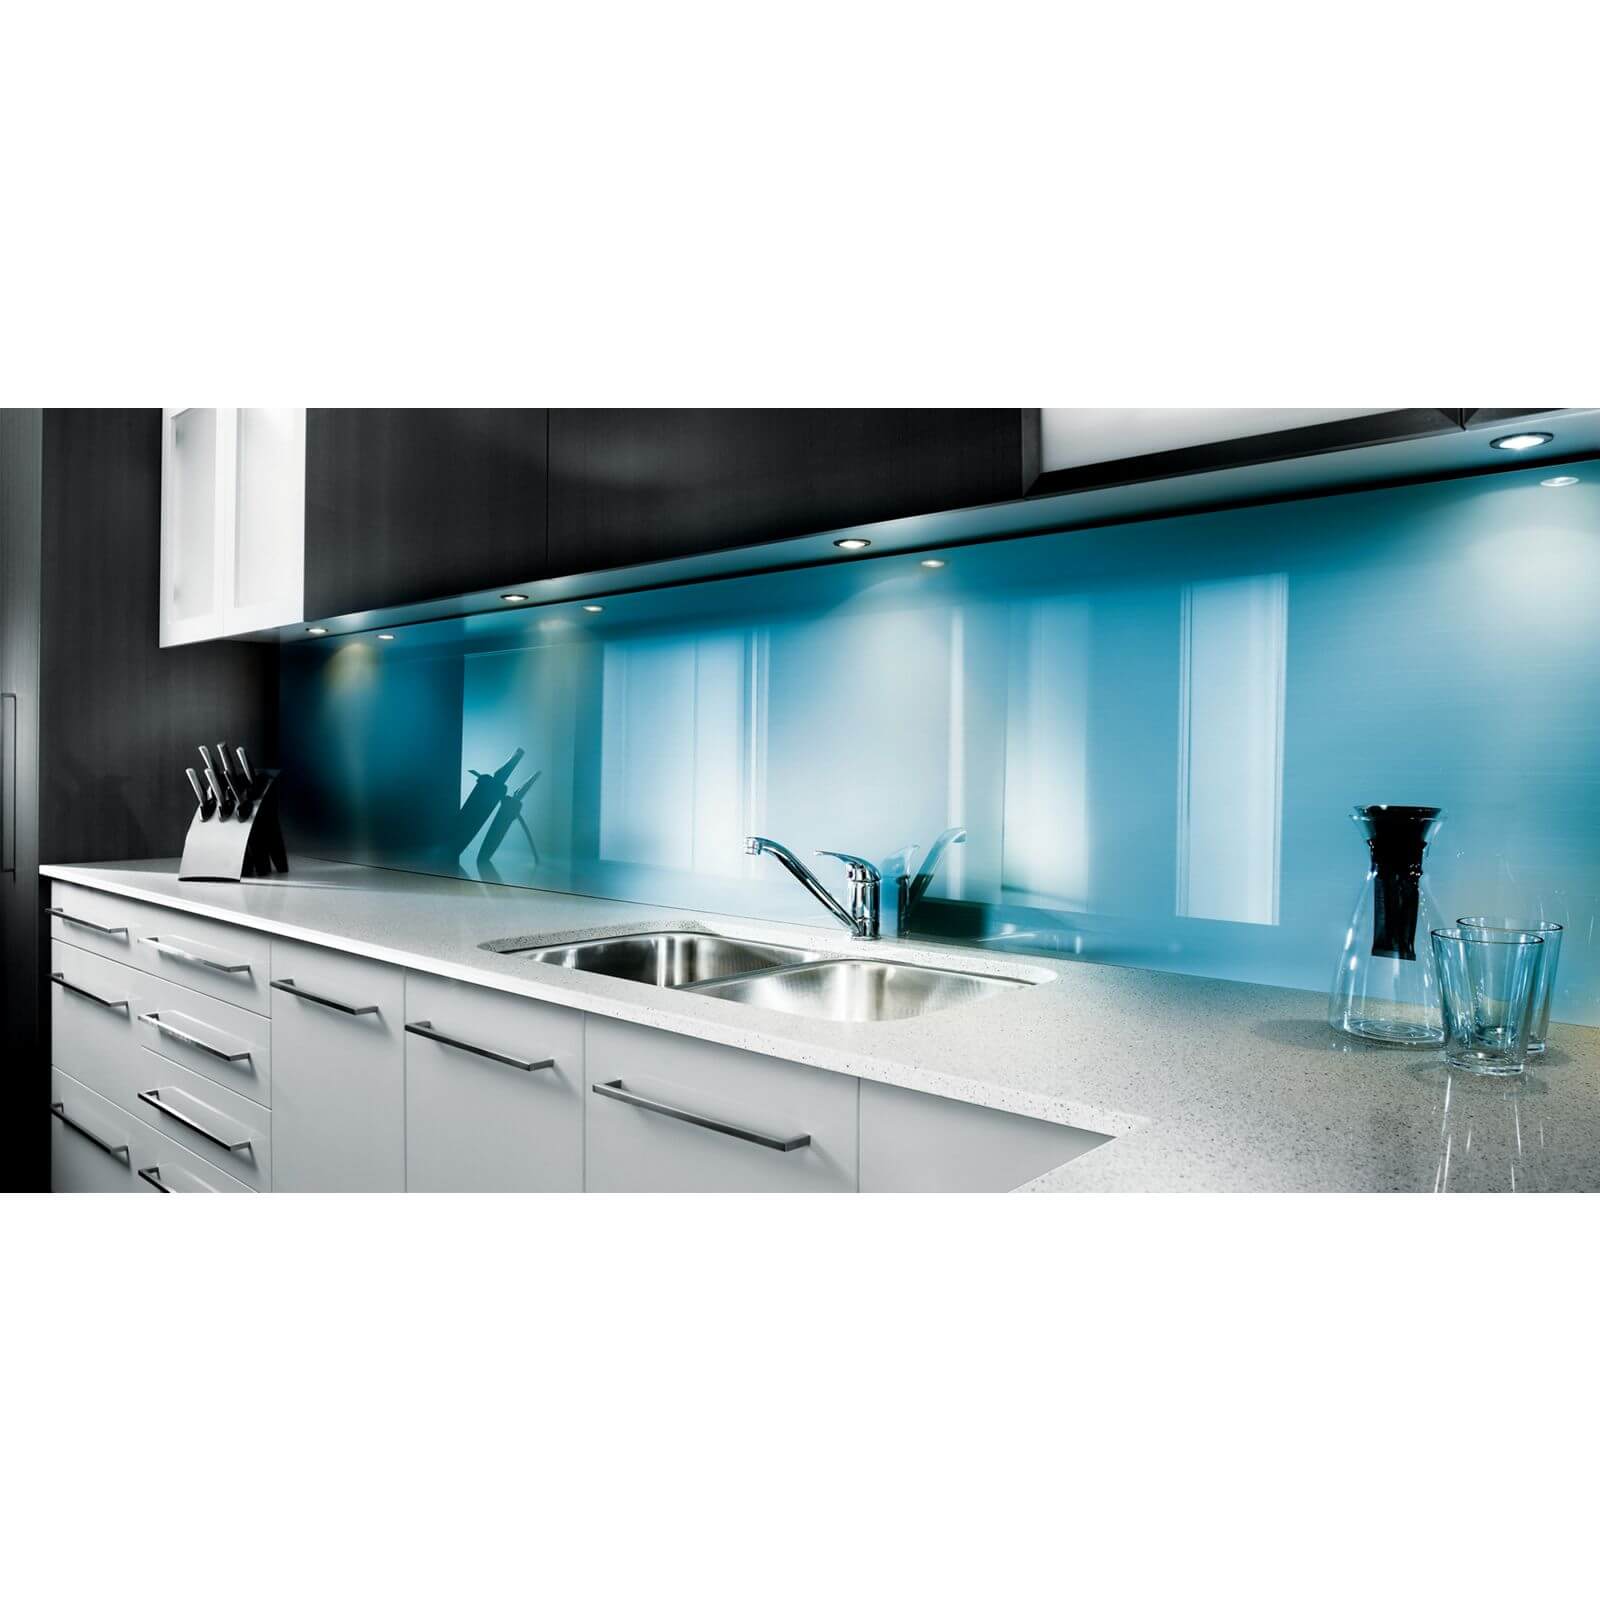 Zenolite Acrylic Kitchen Splashback Panel - 2440 x 605 x 4mm - Blue Atoll